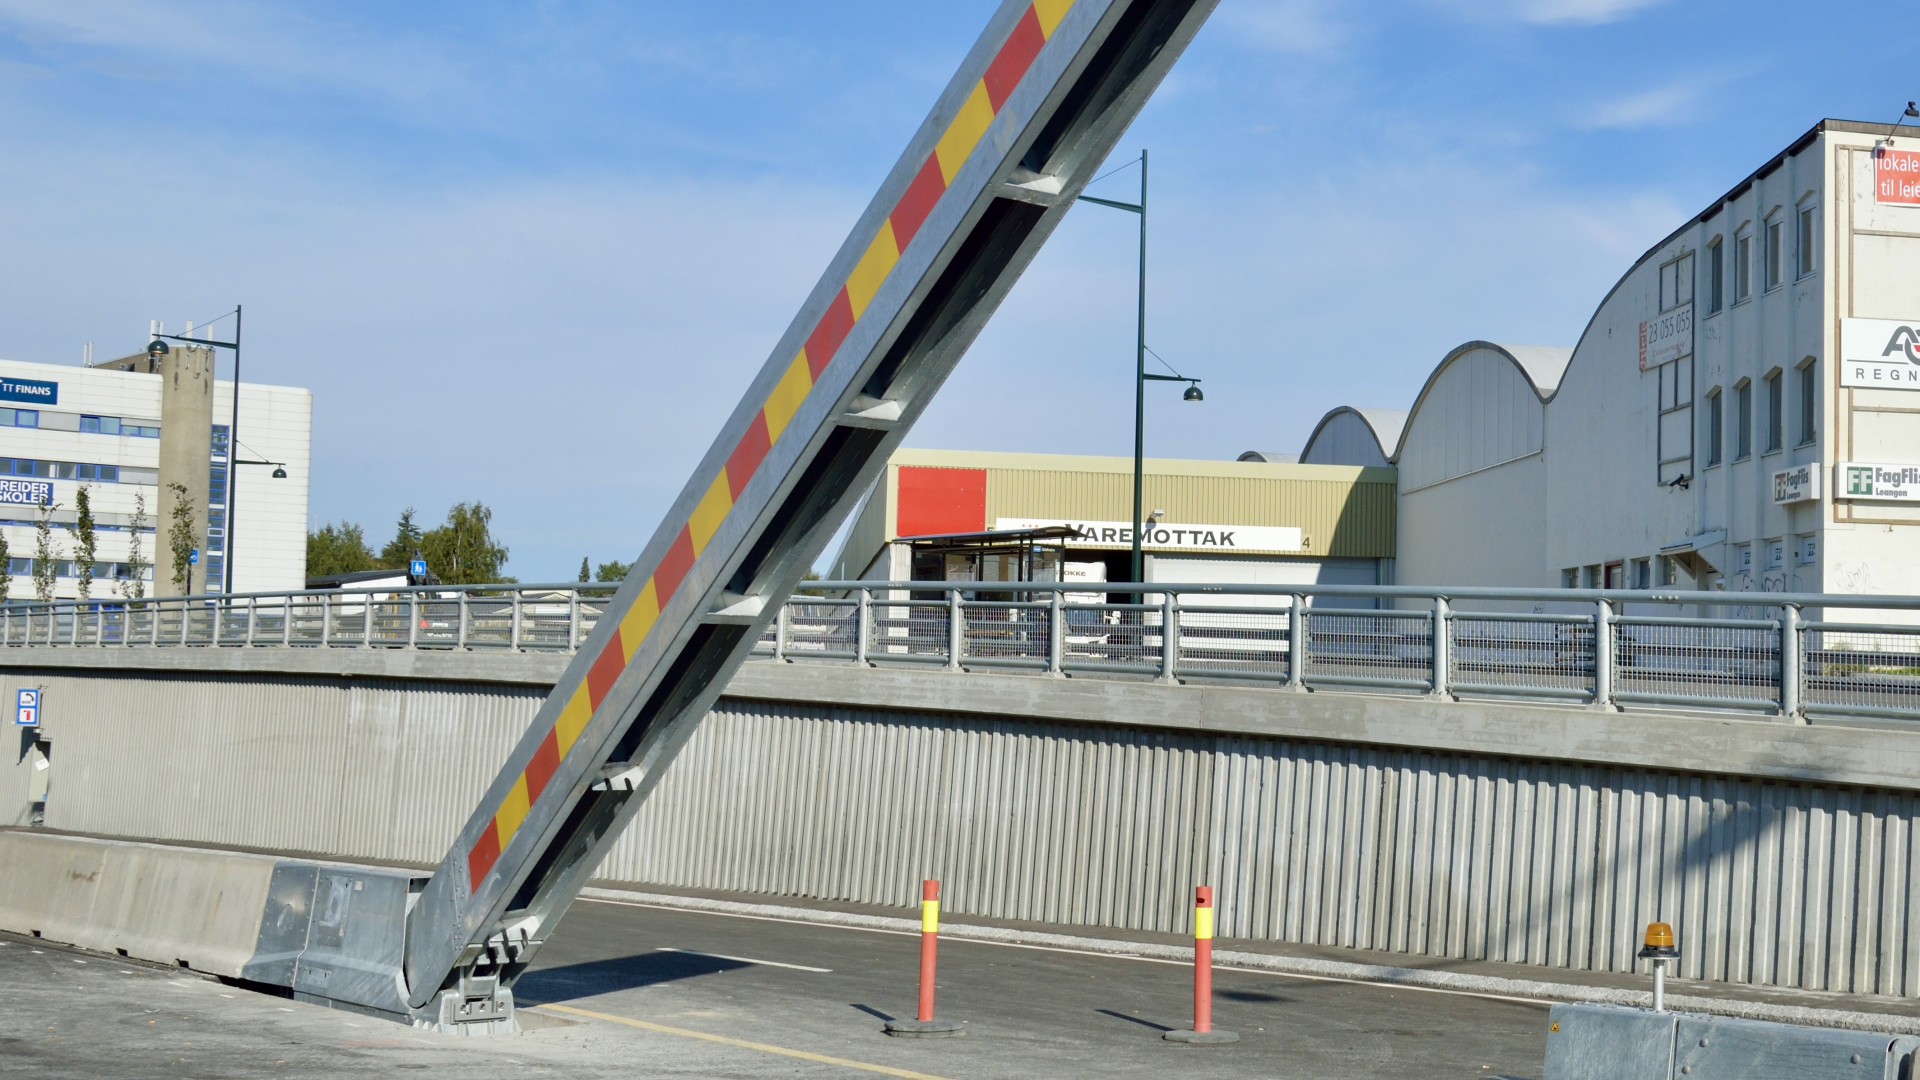 Vier nieuwe cado’s aan de Vierarmentunnel in Brussel